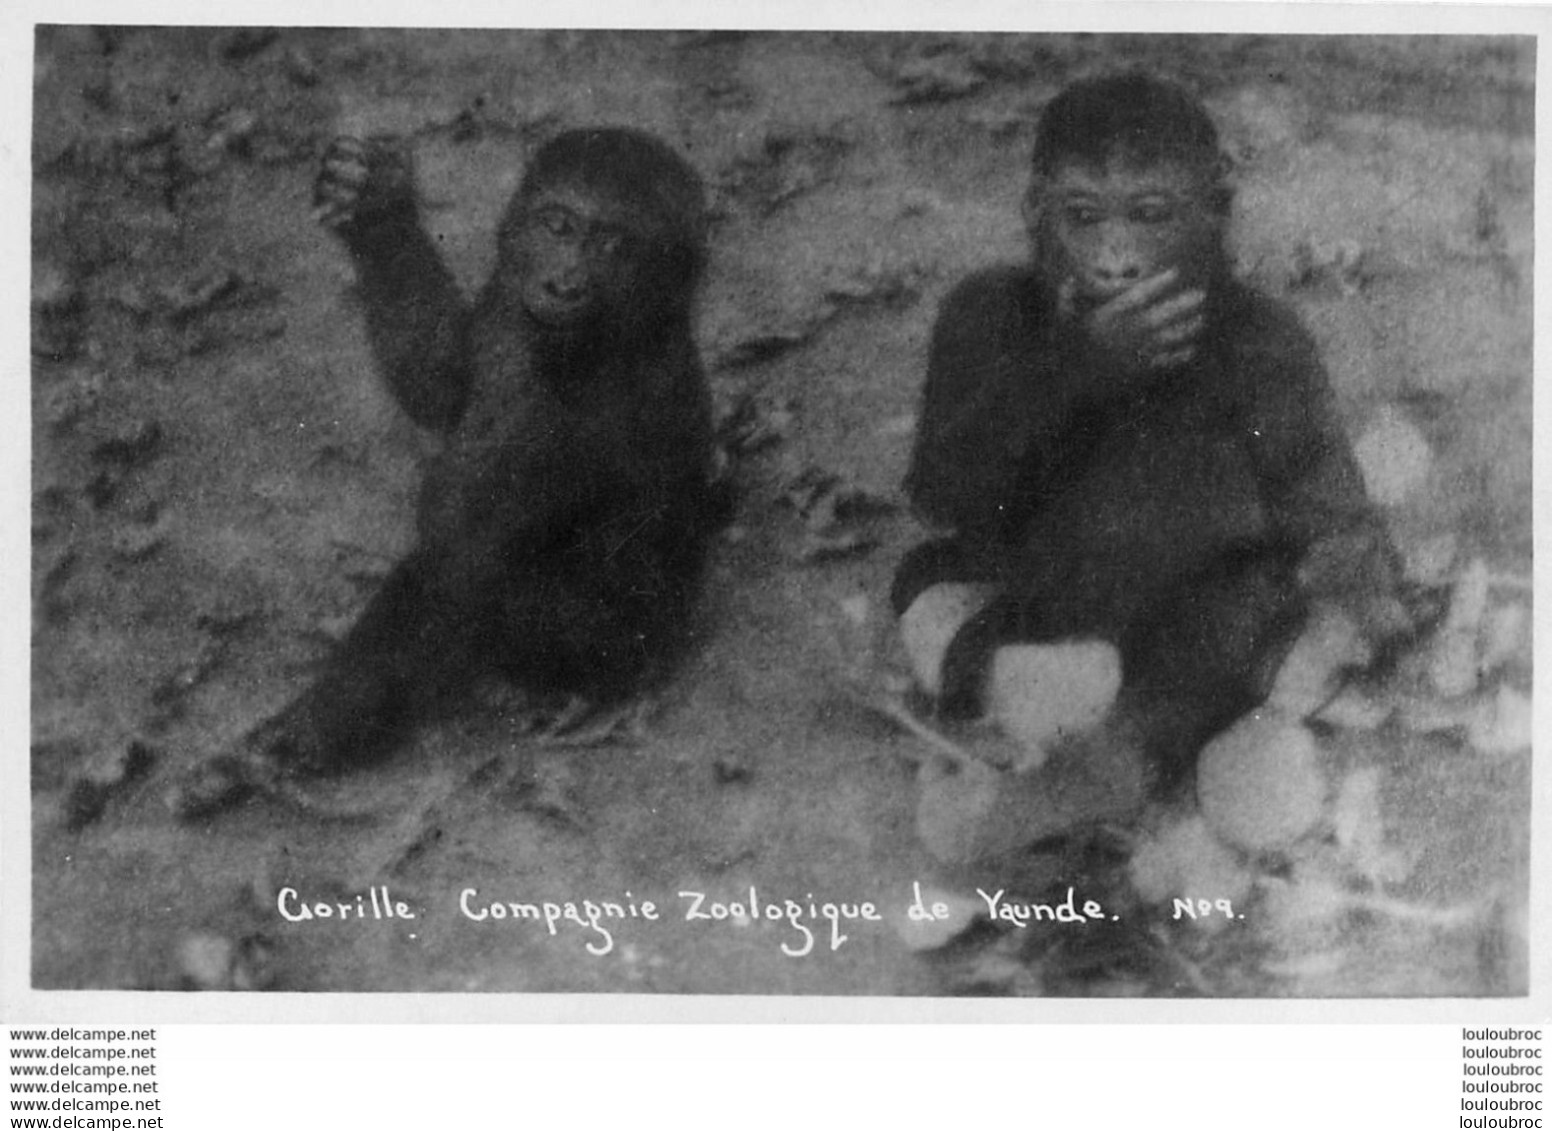 COMPAGNIE ZOOLOGIQUE DE YAUNDE CAMEROUN GORILLE R9 - Cameroon